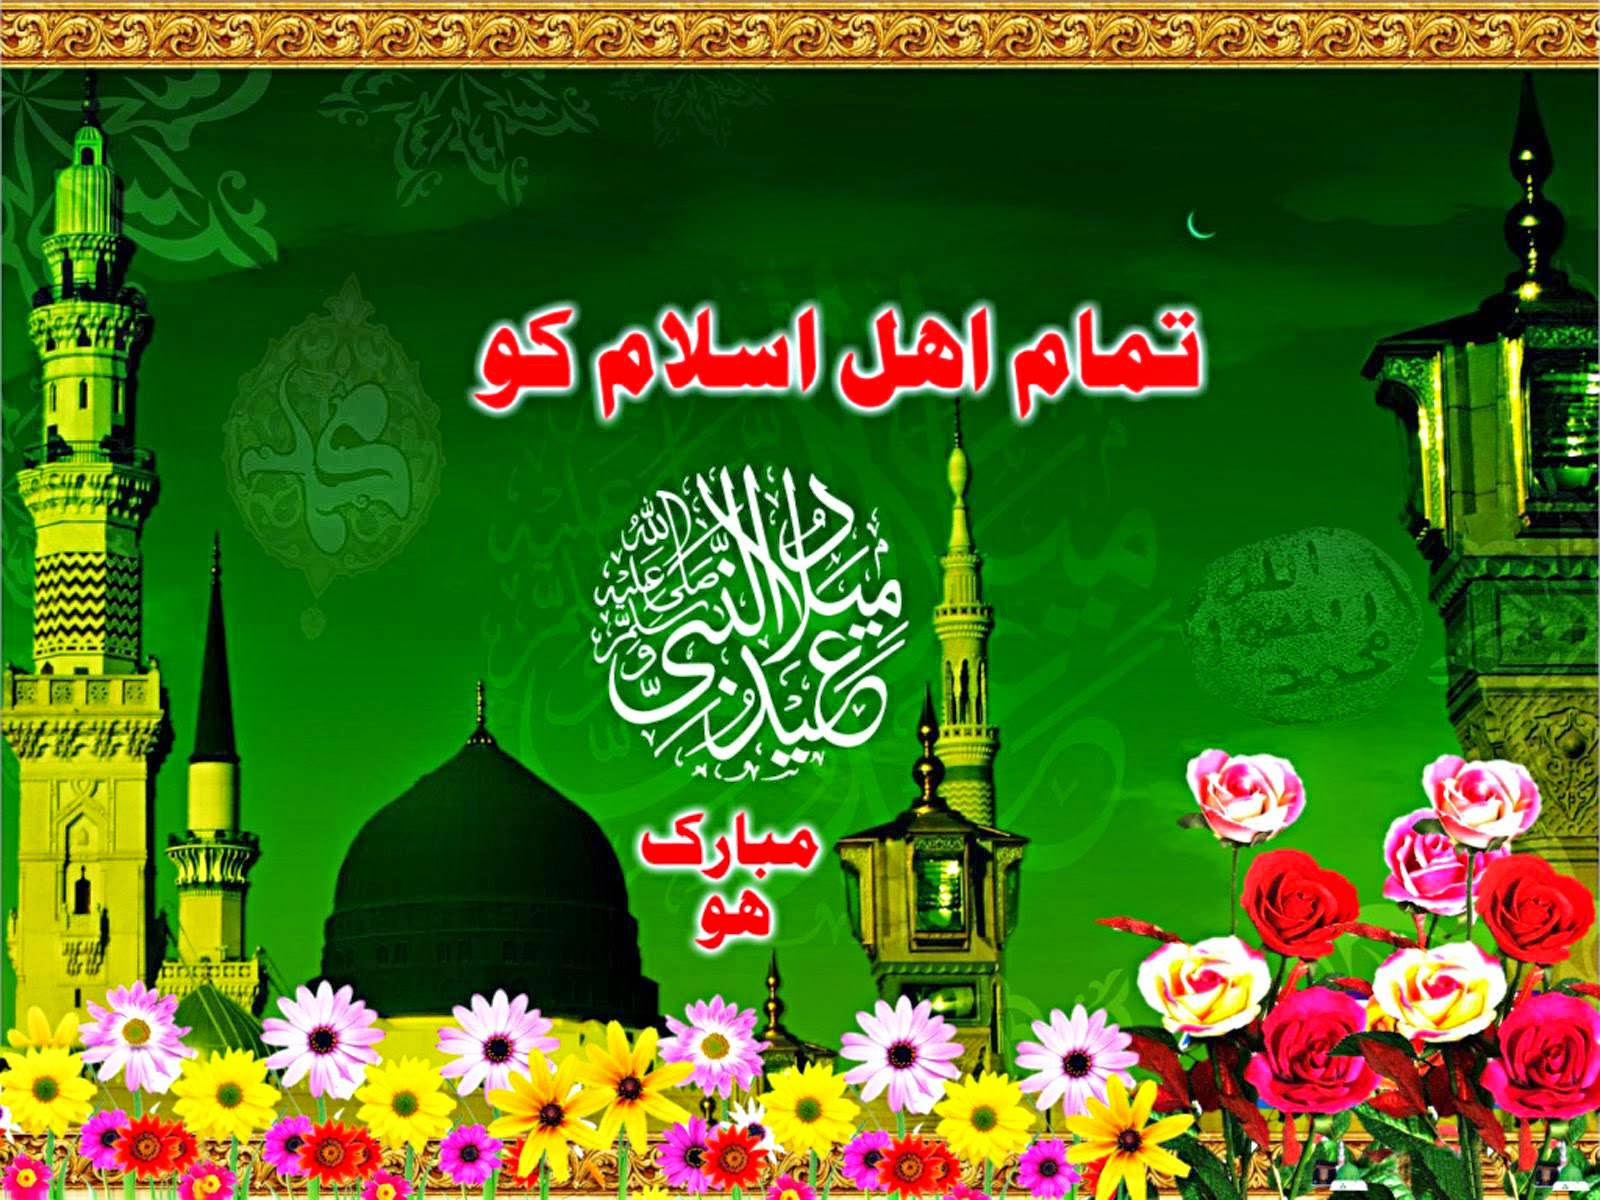 Eid Milad Un Nabi Mubarak 2016 HD Wallpaper Free Download | Wish ...